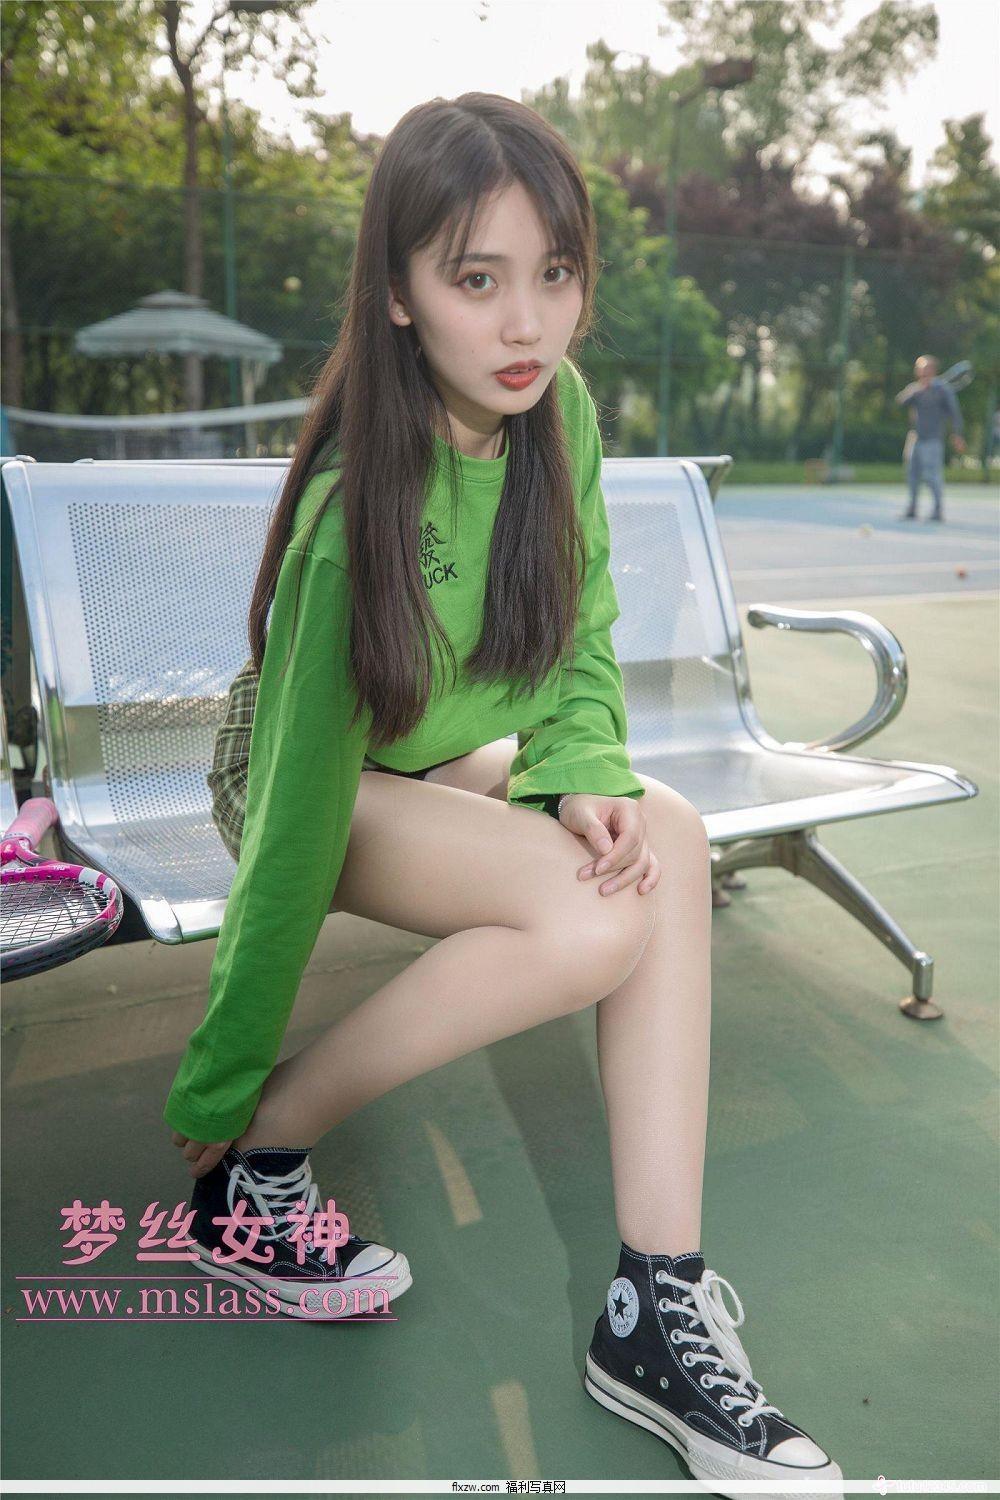 梦丝女神MSLASS - 香萱 网球少女(20)